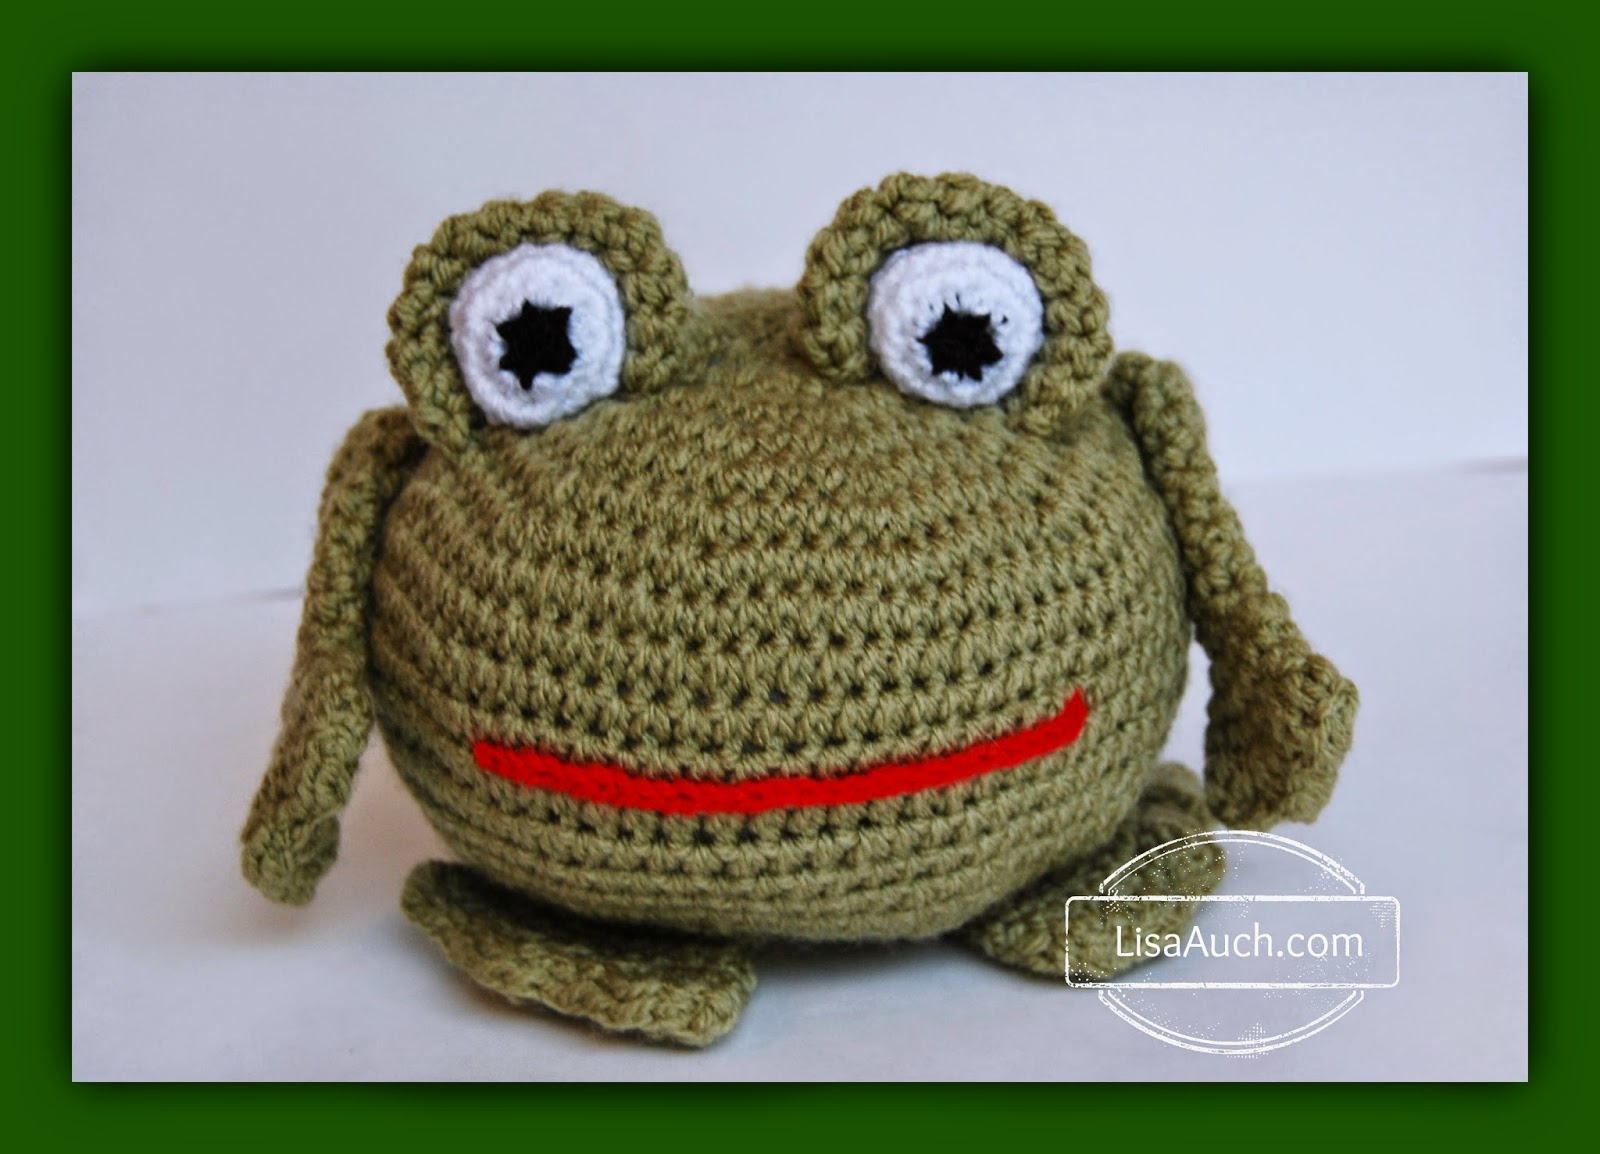  Crochet Frog Doorstop with this Easy Crochet Pattern